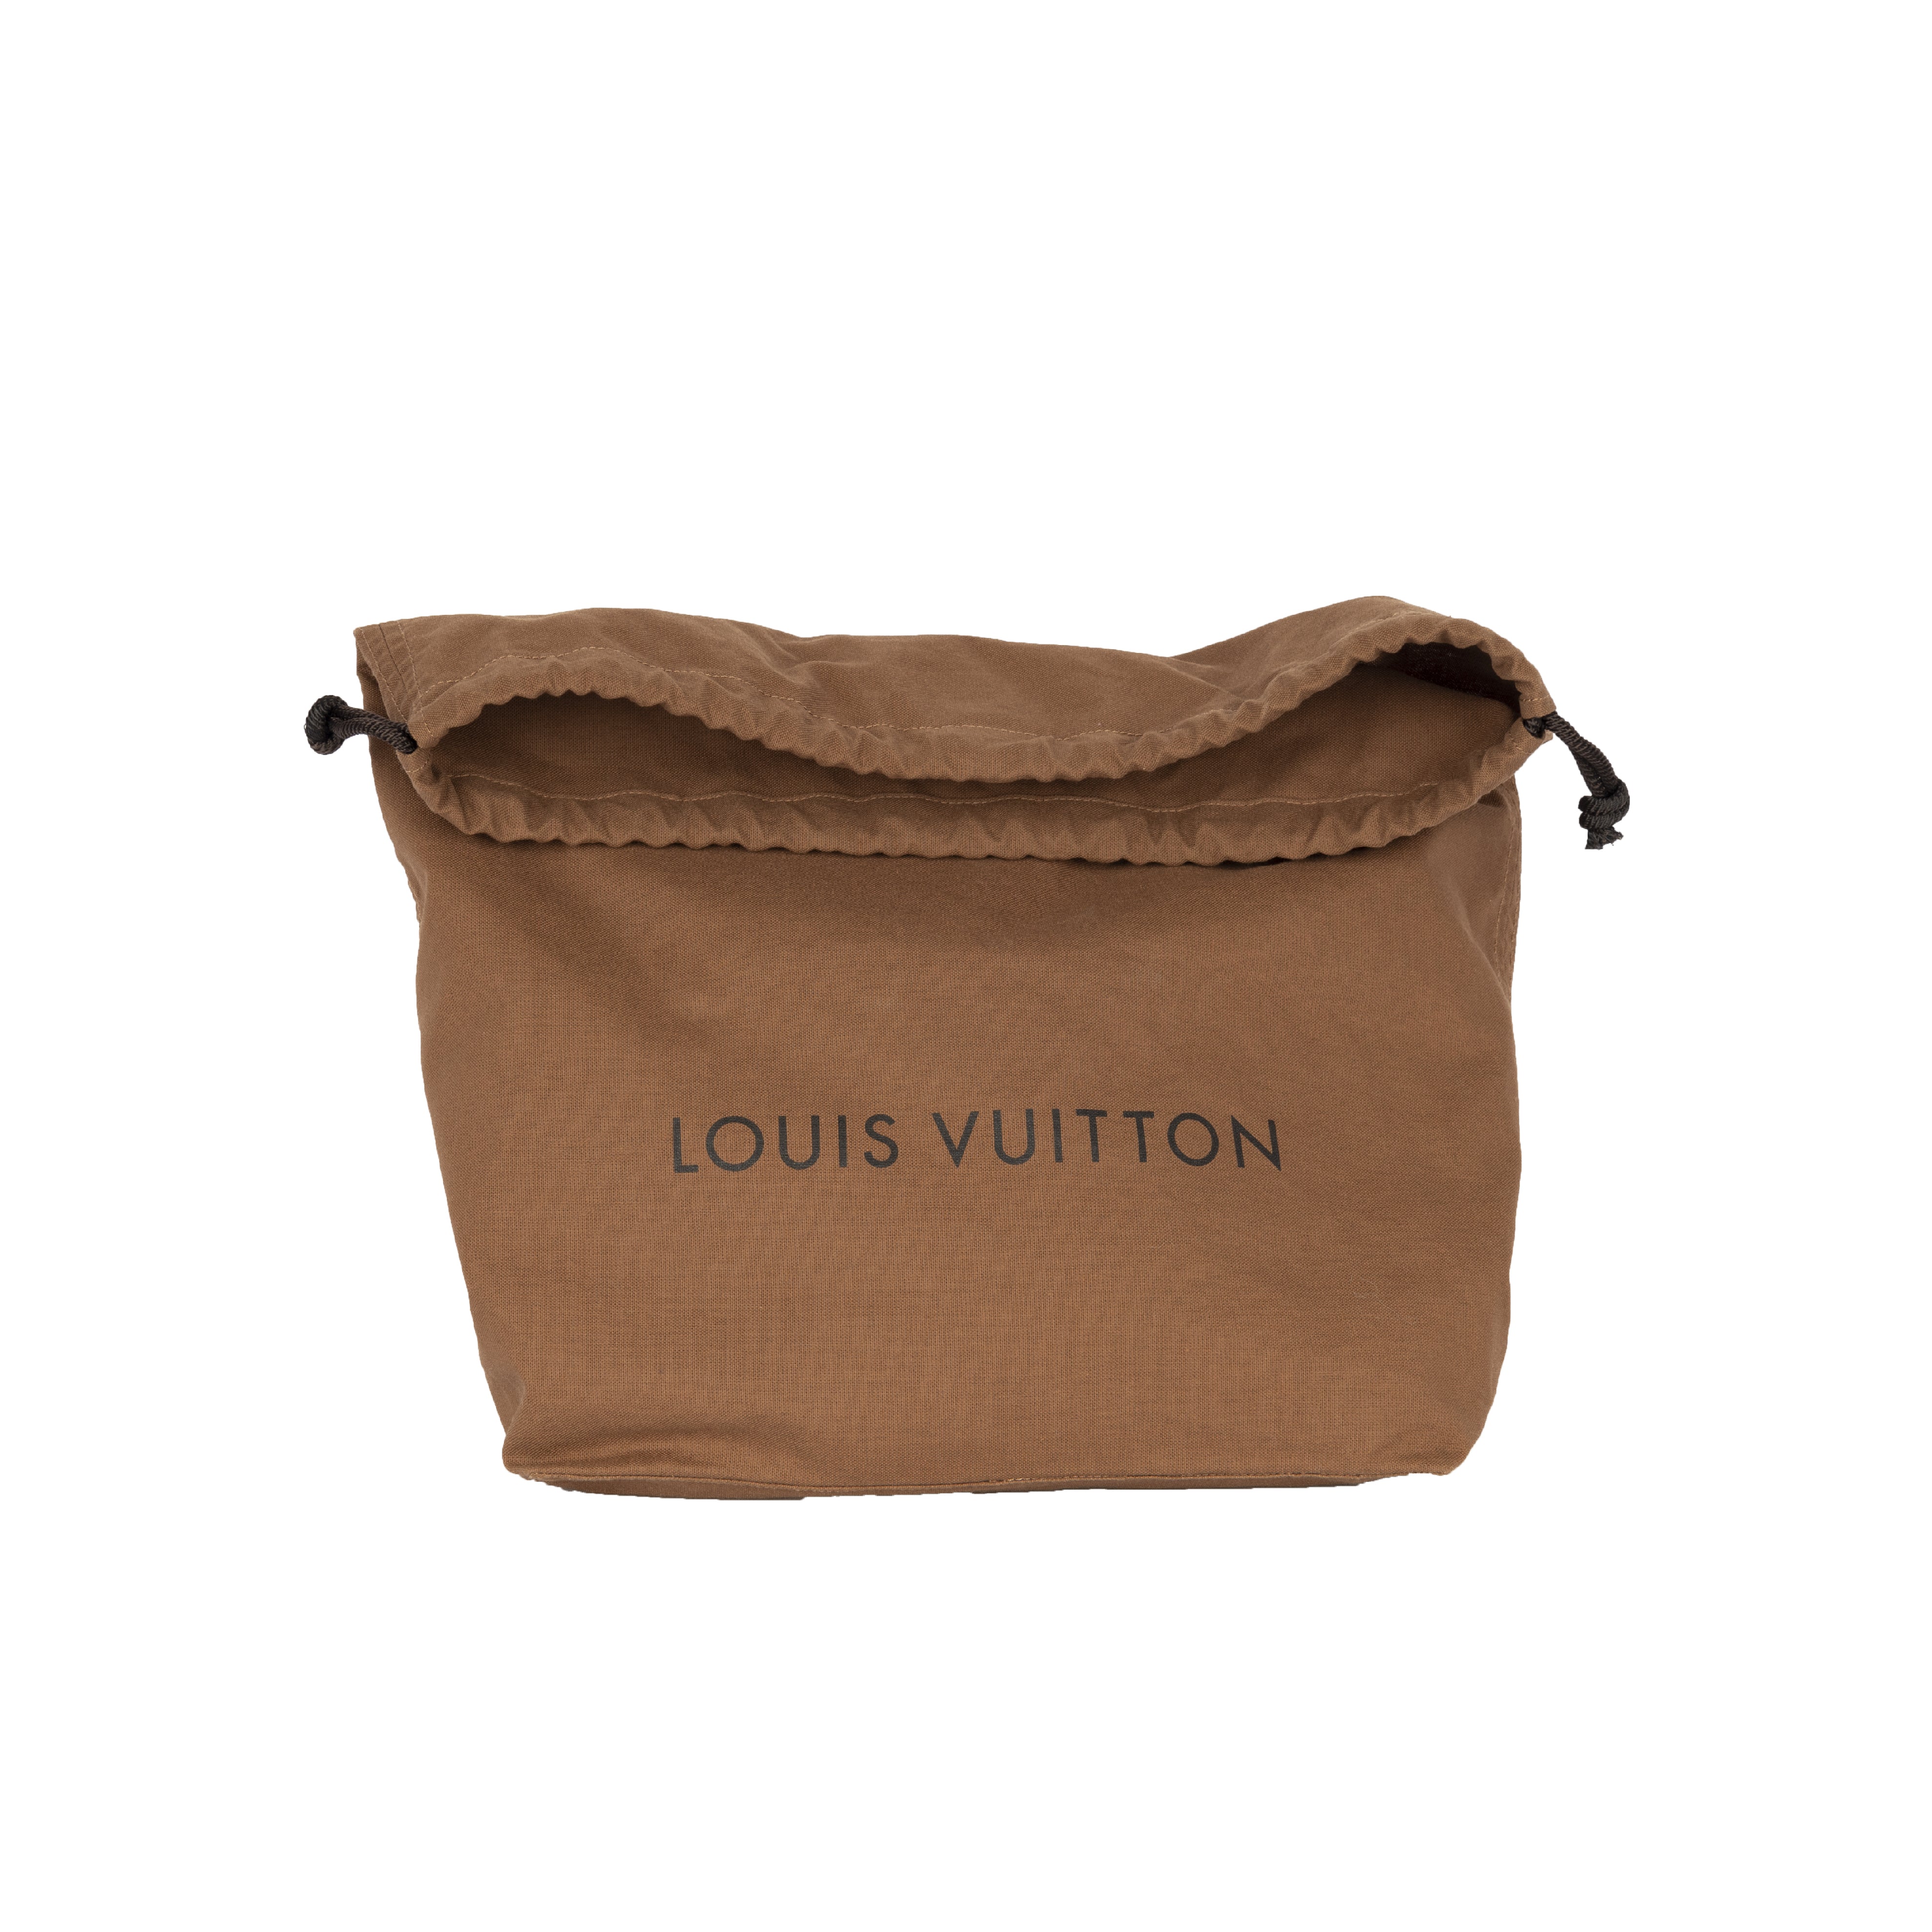 Comme des Garçons x Louis Vuitton Monogram Empreinte Bag